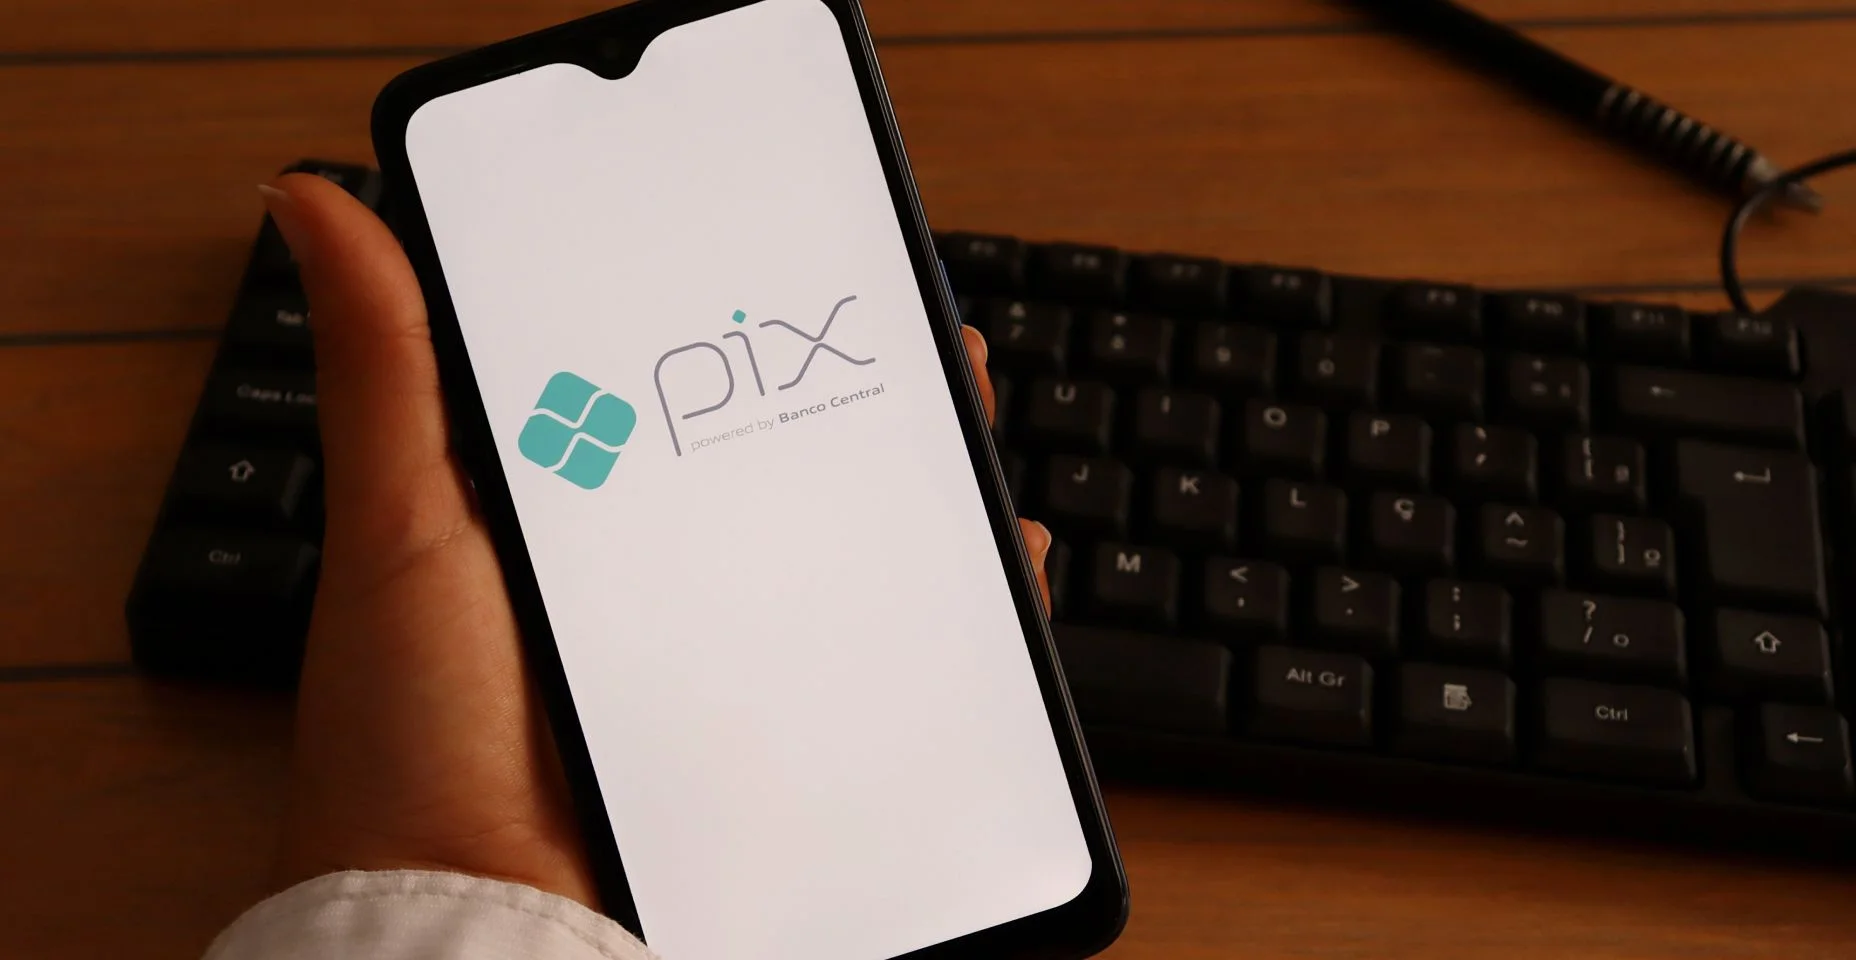 Mão de uma mulher segurando smartphone com logotipo Pix na tela, na mesa do escritório. Pix Brasil é um sistema de pagamento instantâneo.